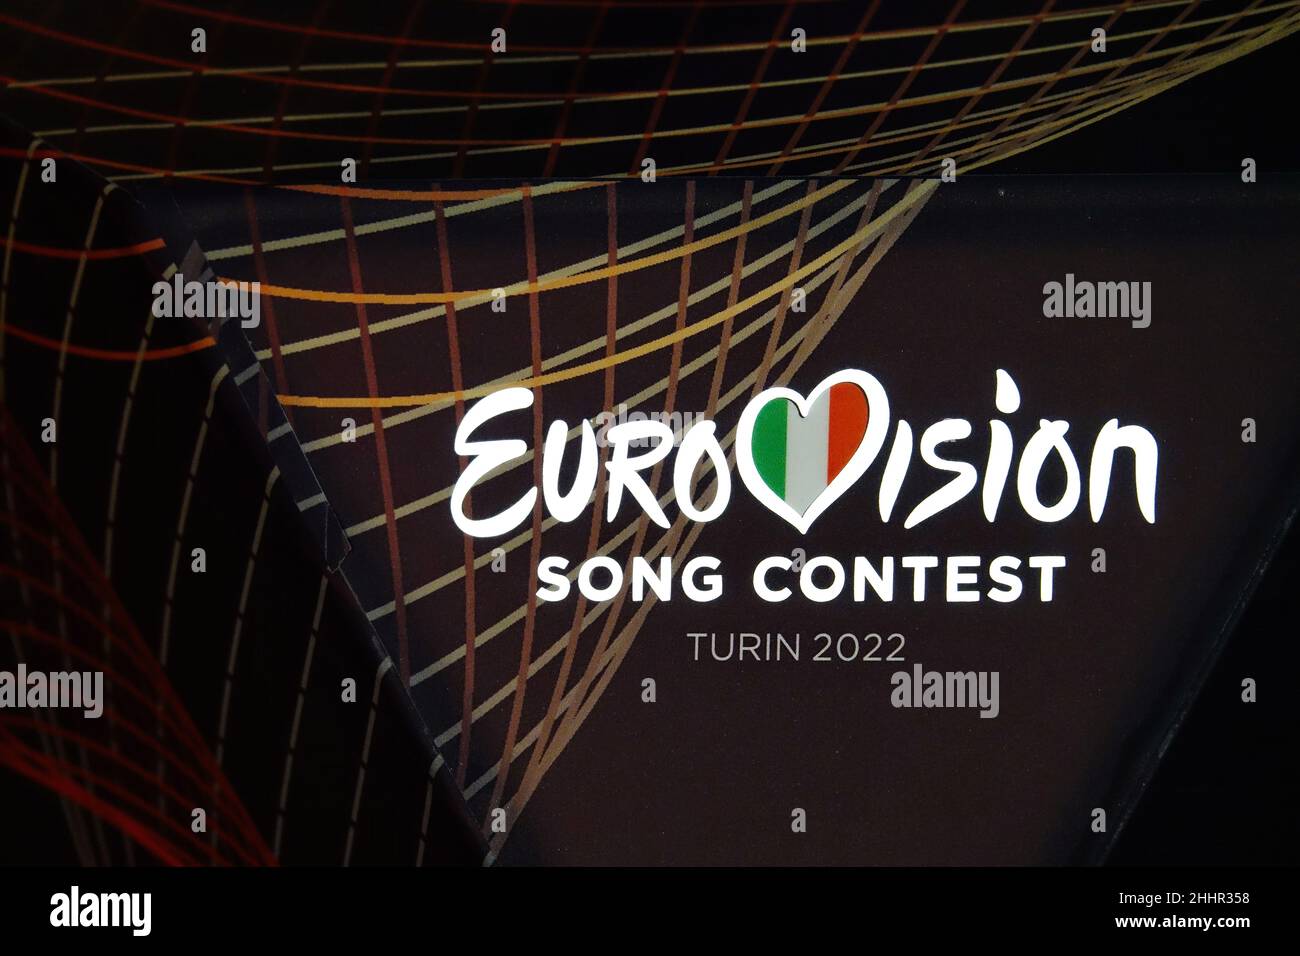 Logo du concours Eurovision Song.L'édition 66th aura lieu à Turin en mai 2022.Turin, Italie - janvier 2022 Banque D'Images